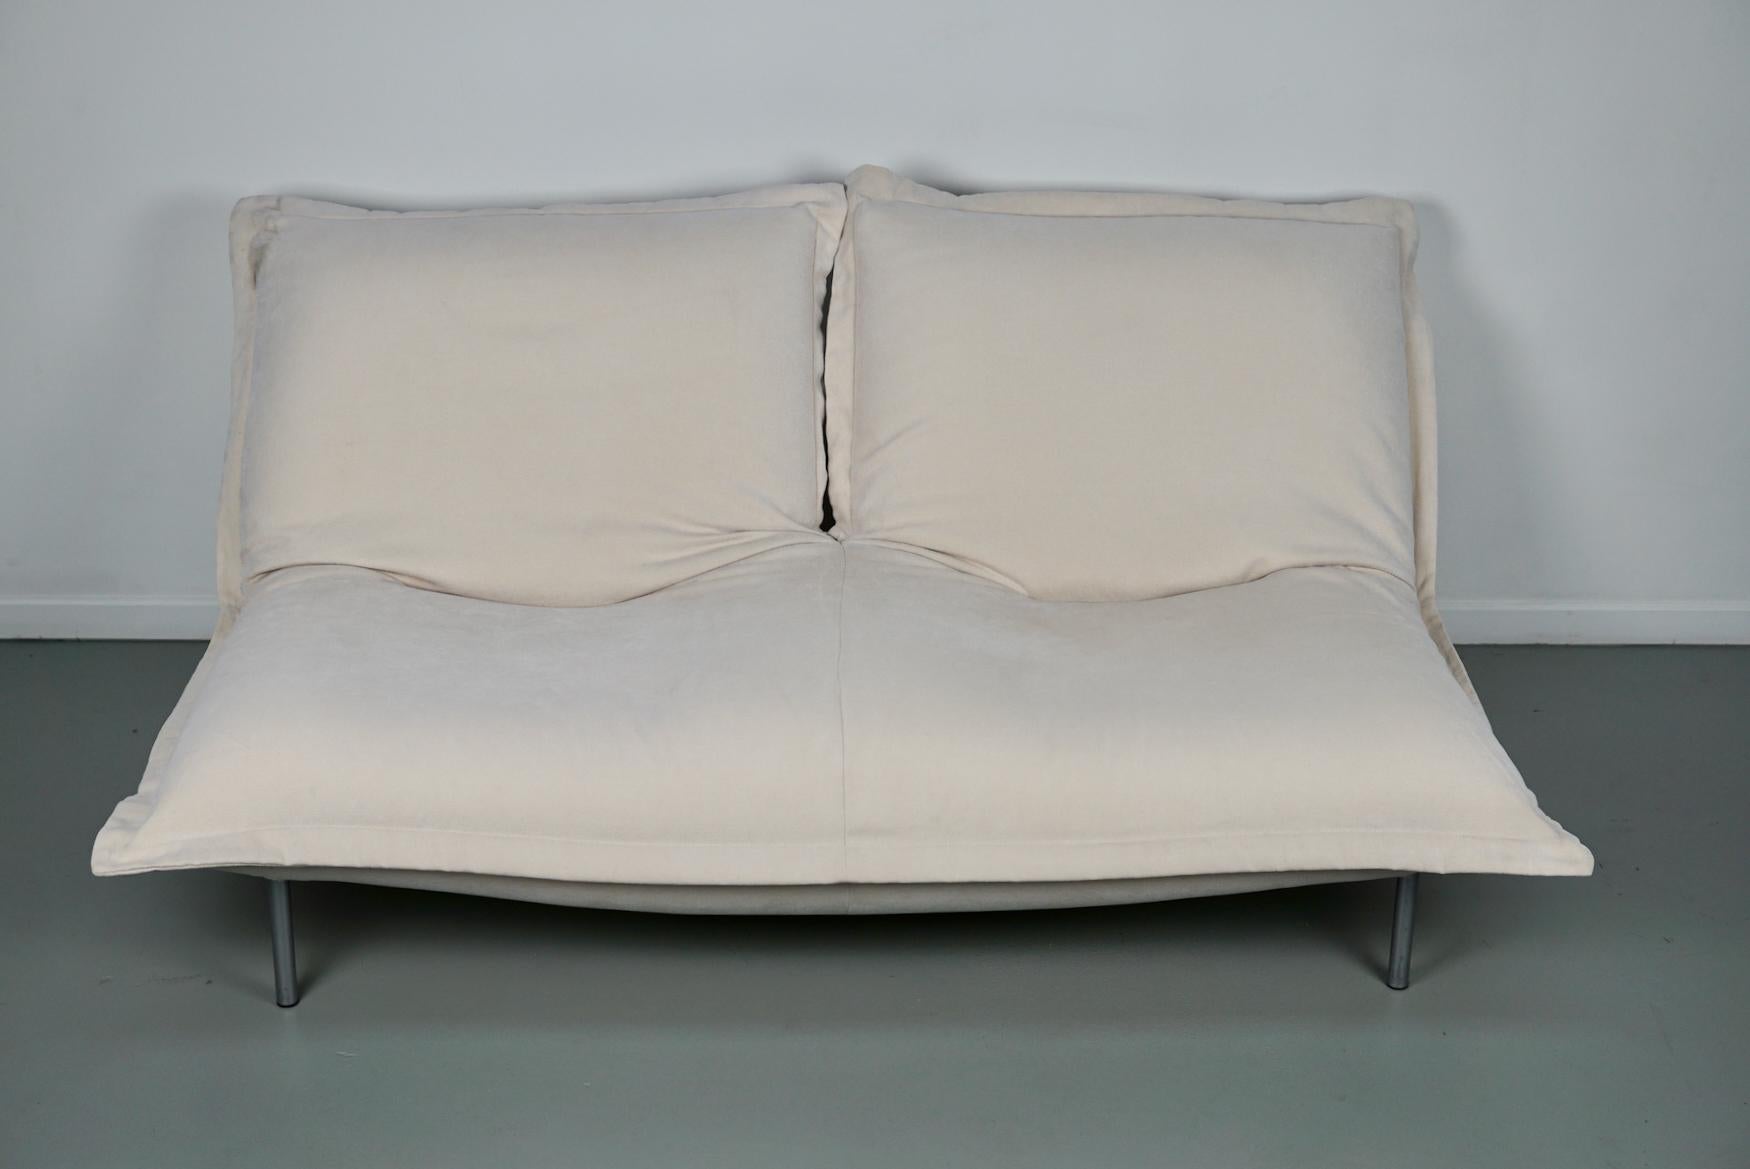 Calin Corner Sofa Set by Pascal Mourgue for Cinna / Ligne Roset - 4 seater 7